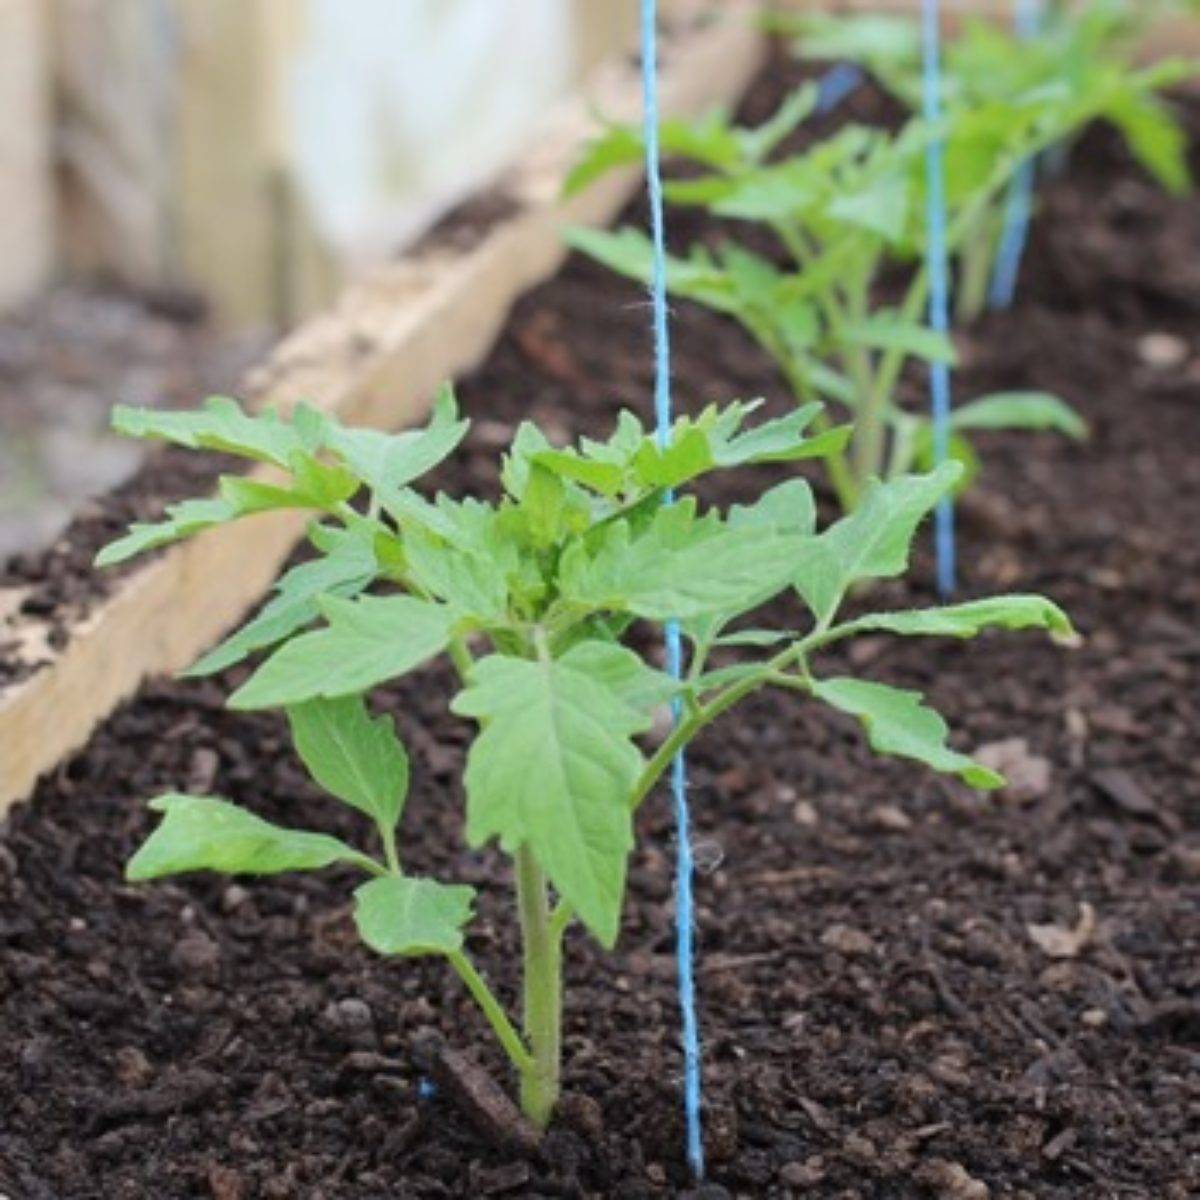 Как вырастить помидоры в теплице из поликарбоната - инструкция с пошаговым руководством!